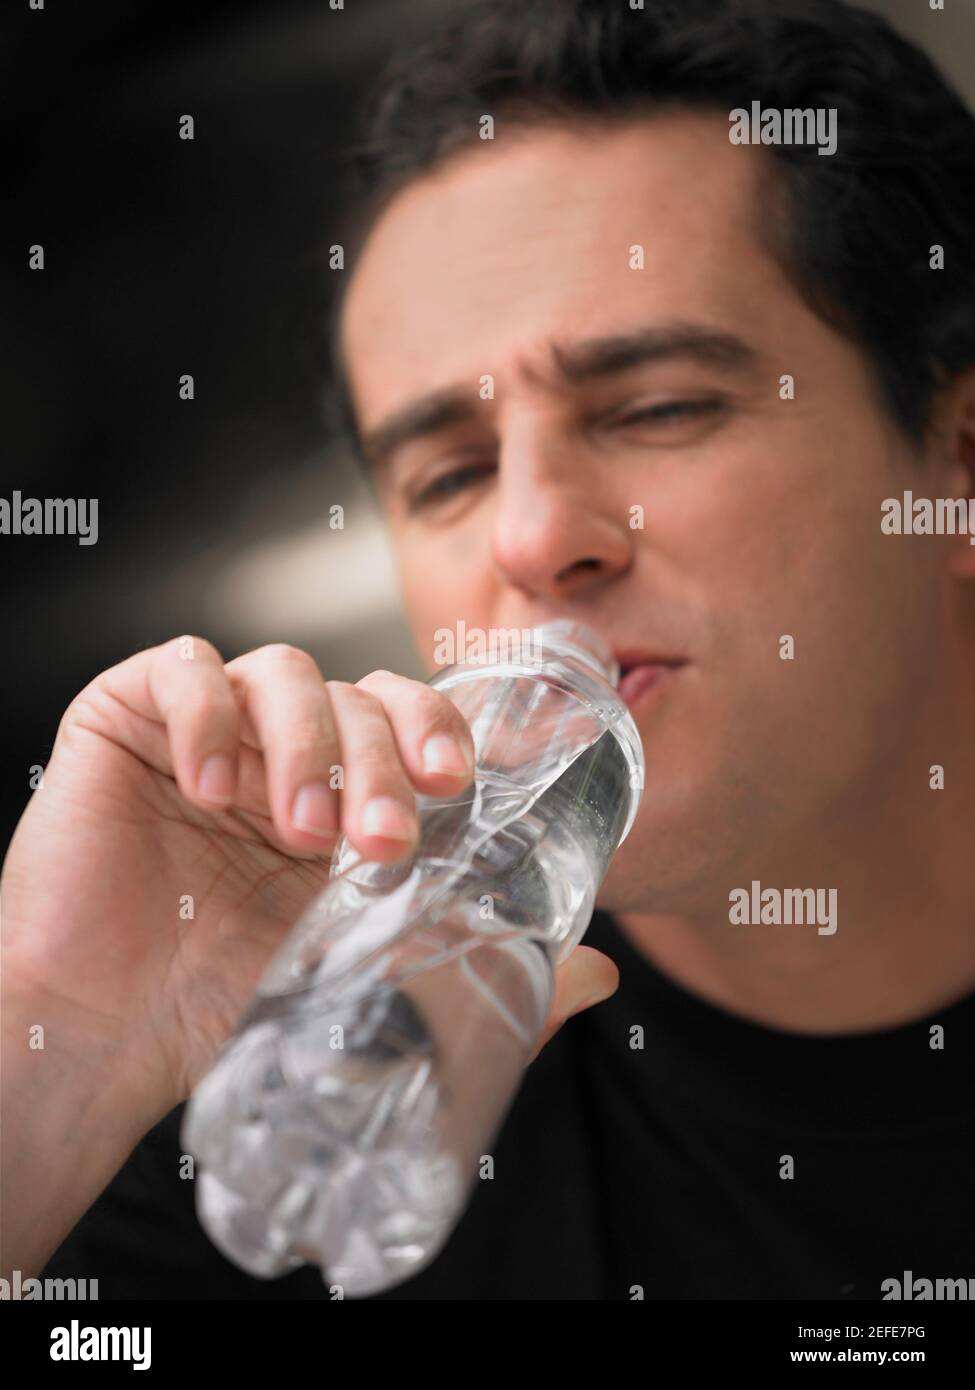 Gros plan d'un homme mature qui boit de l'eau dans une bouteille Banque D'Images